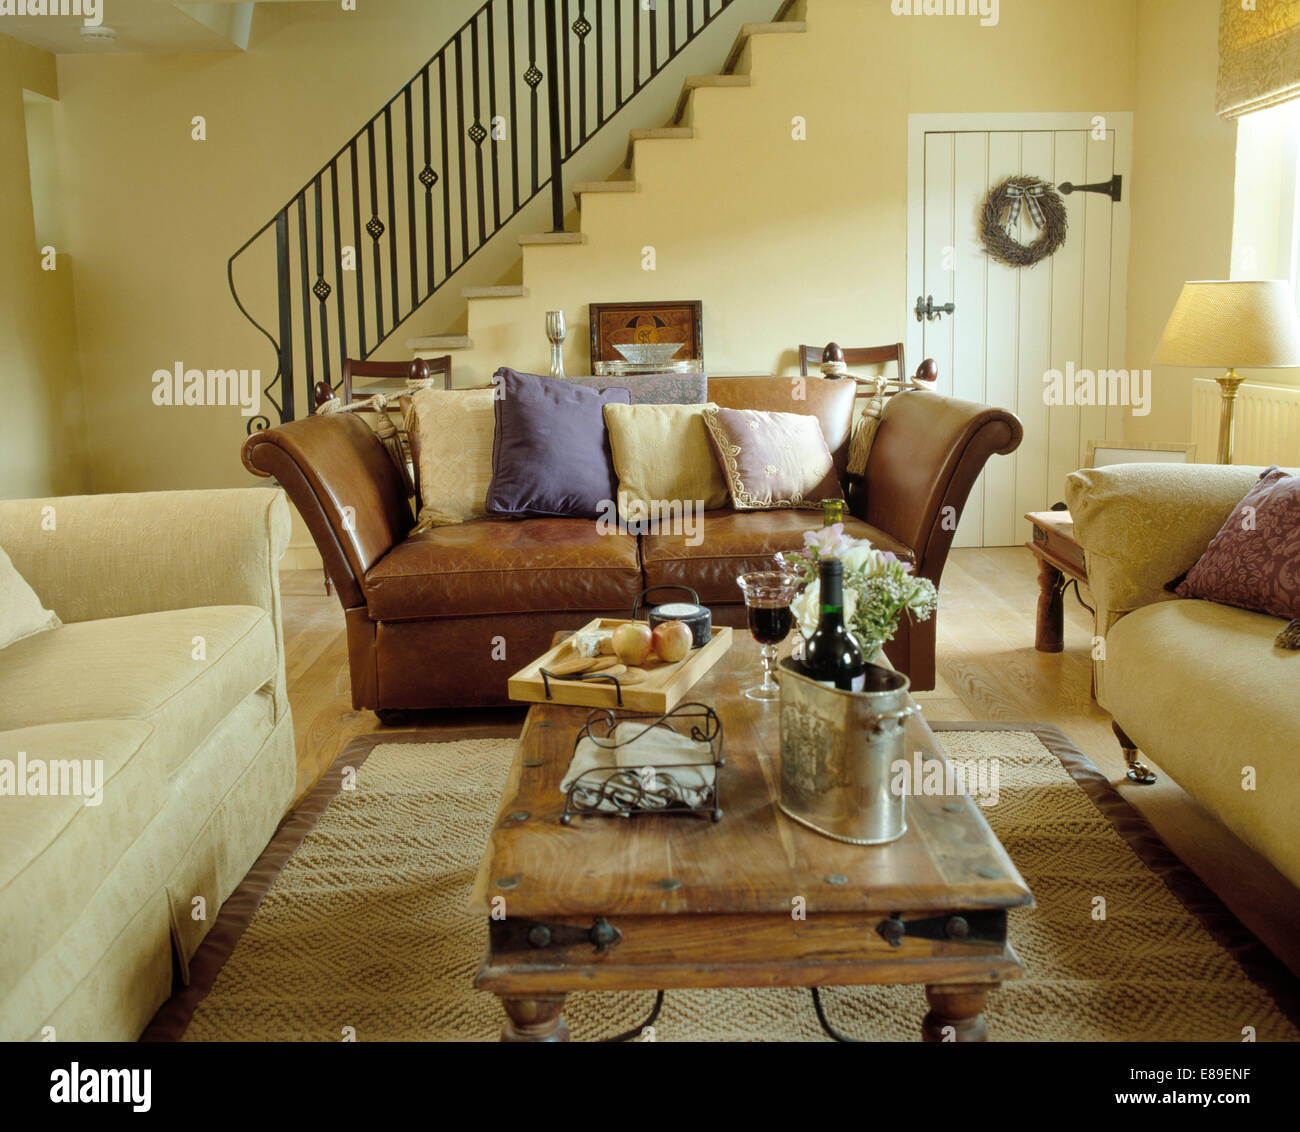 Cremefarbene Sofas mit Braune Ledercouch, um indonesische Couchtisch im  modernen Wohnzimmer angeordnet Stockfotografie - Alamy